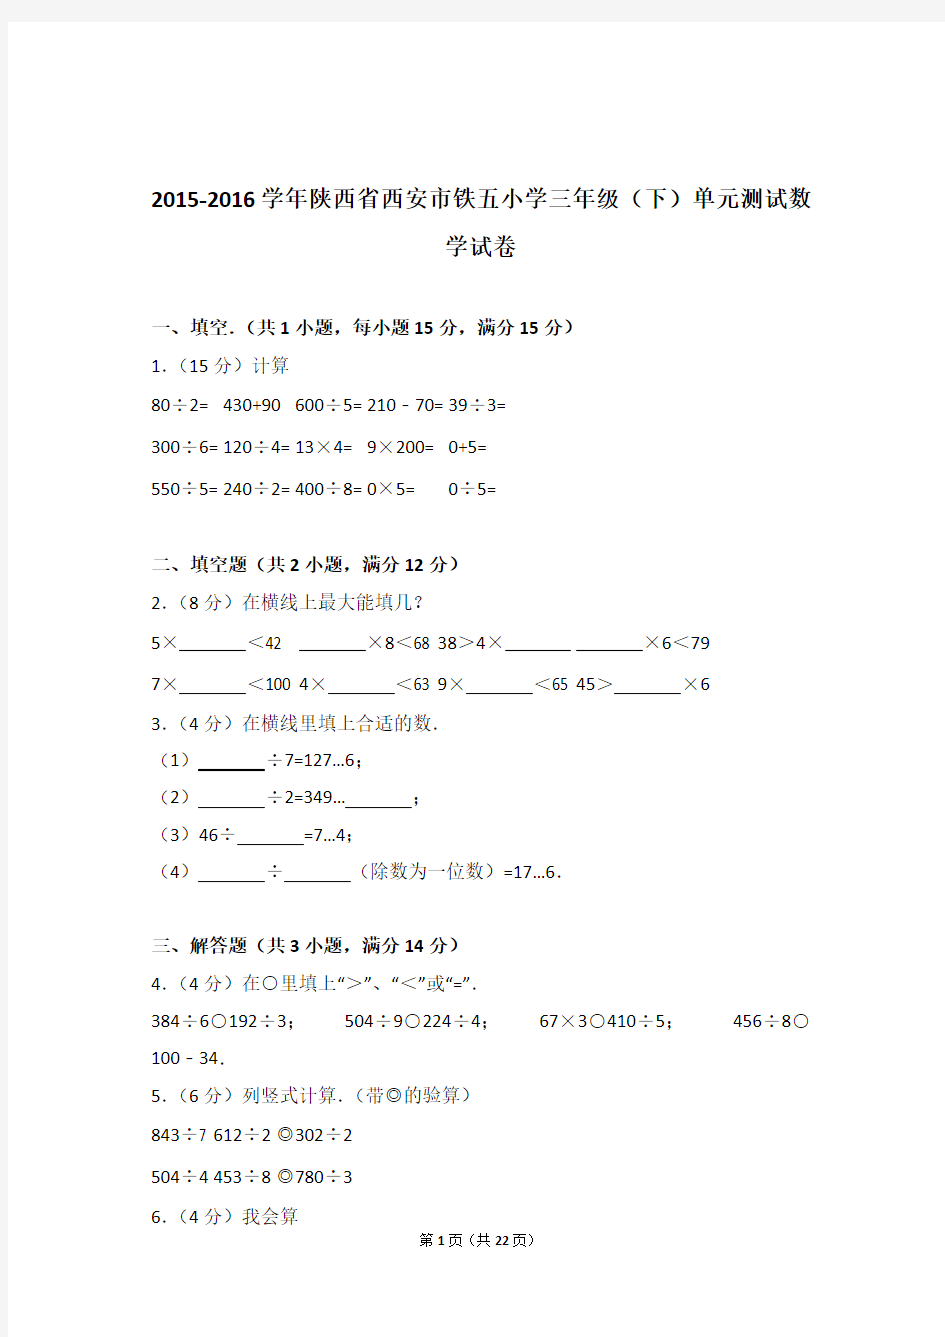 【真题】2015-2016学年陕西省西安市铁五小学三年级(下)单元测试数学试卷及解析